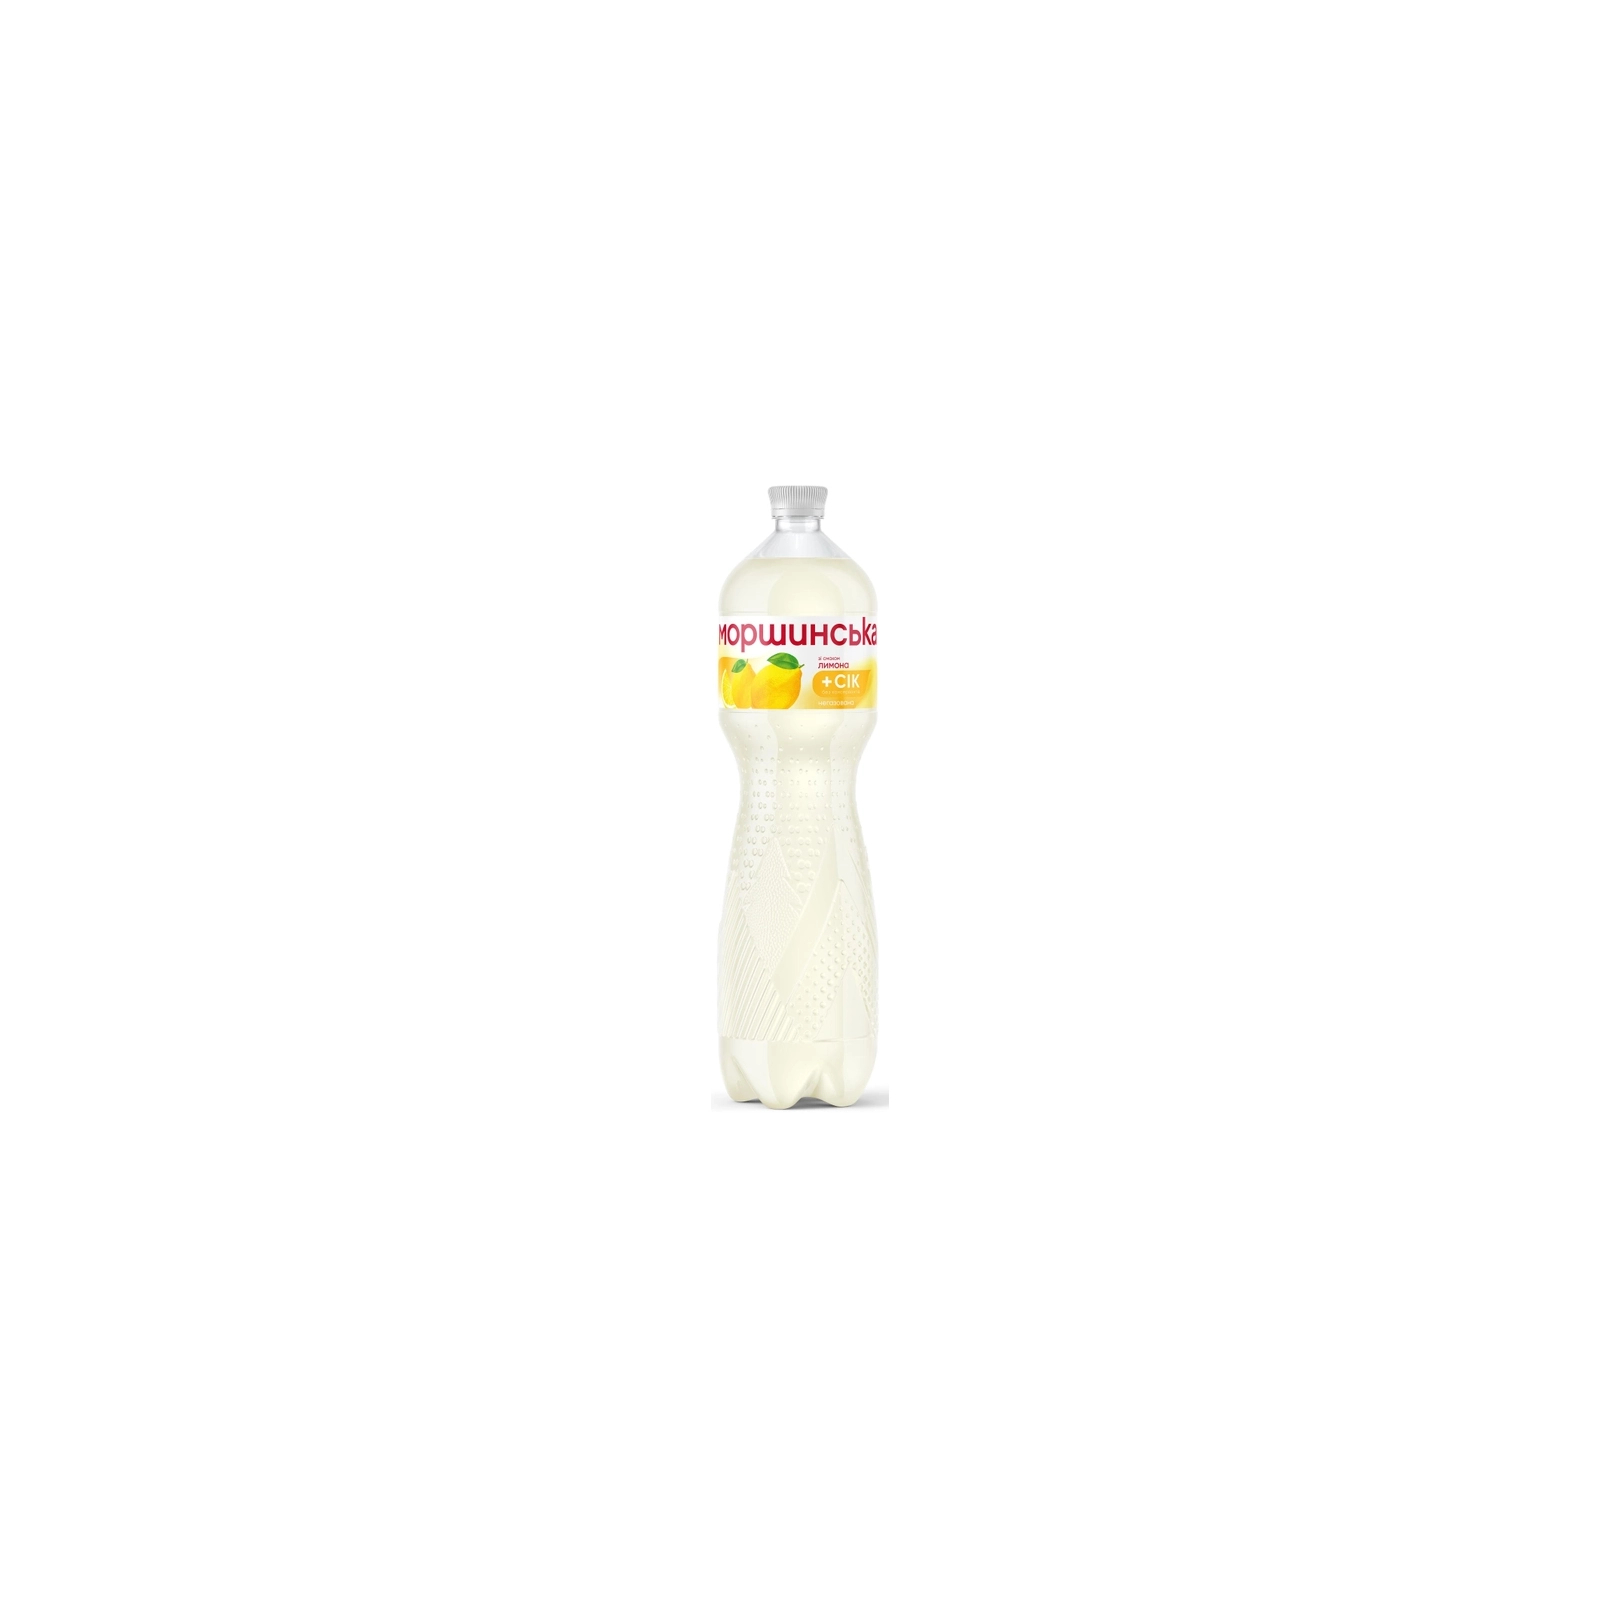 Напиток Моршинська сокосодержащий негазированный со вкусом лимона 0.5 л (4820017002547) изображение 2